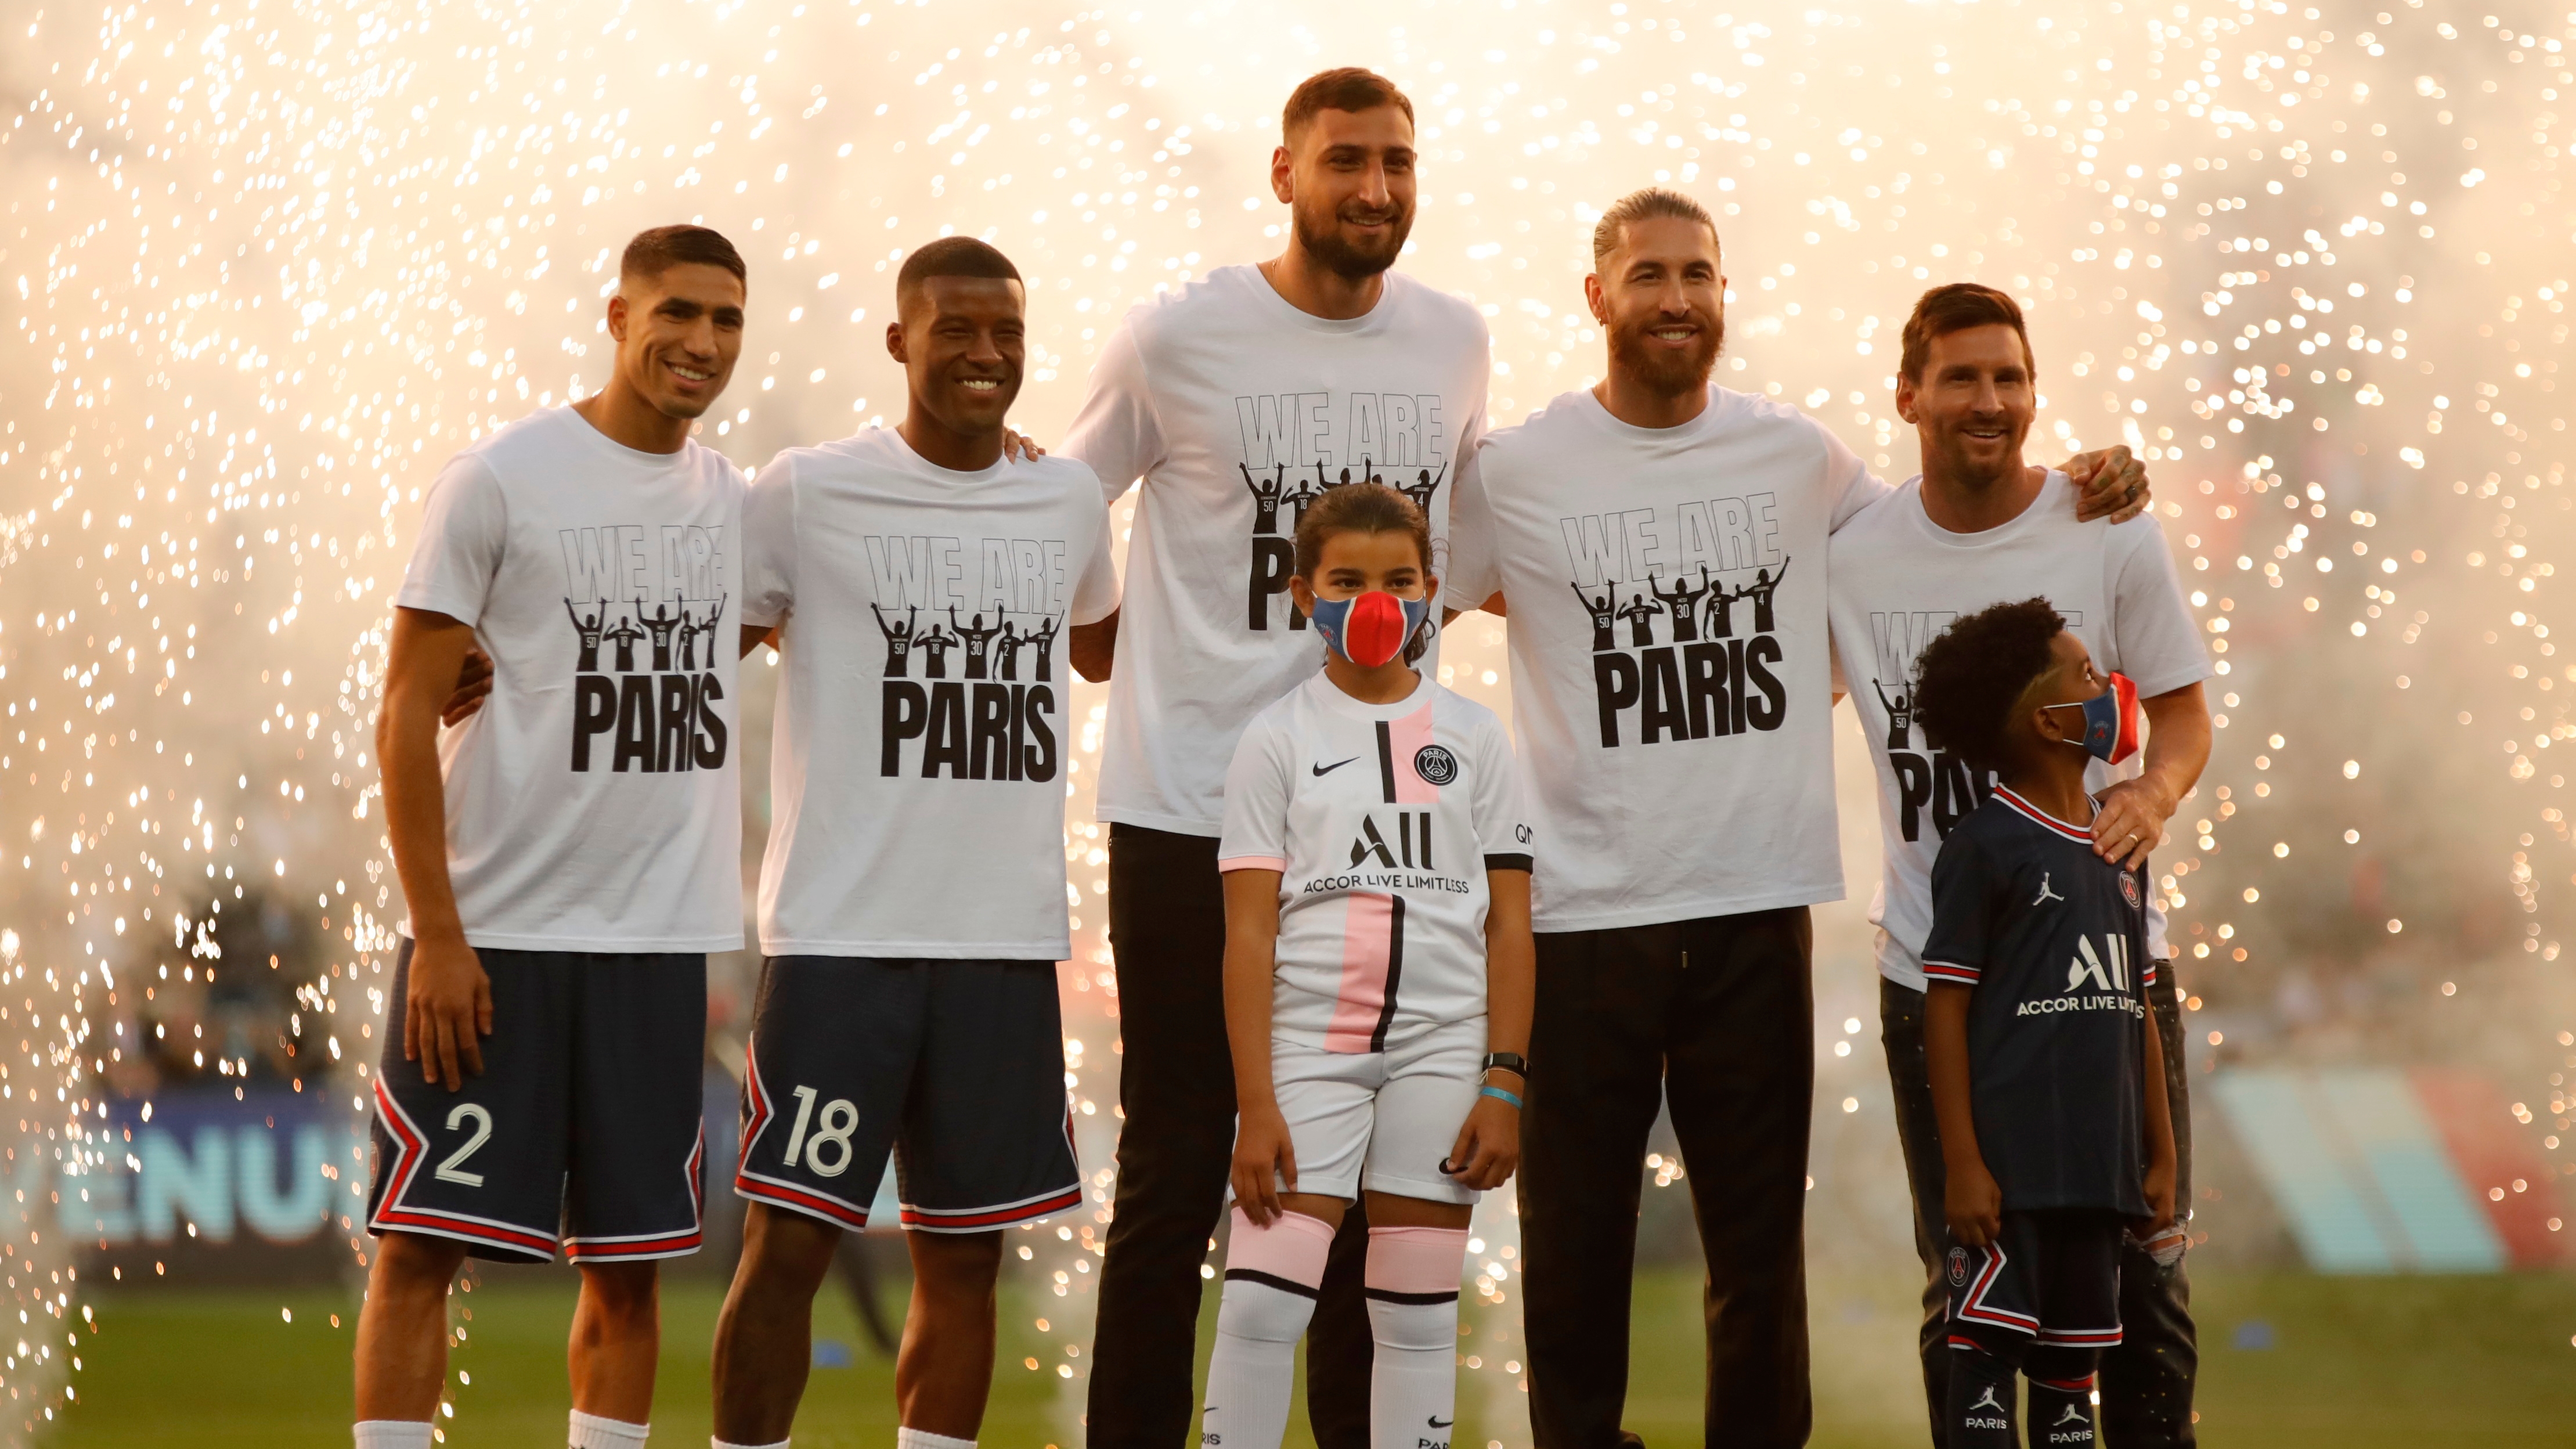 "We are París": la leyenda en las camisetas de los refuerzos del PSG, que propició el sugerente mensaje del Barcelona (REUTERS/Sarah Meyssonnier)